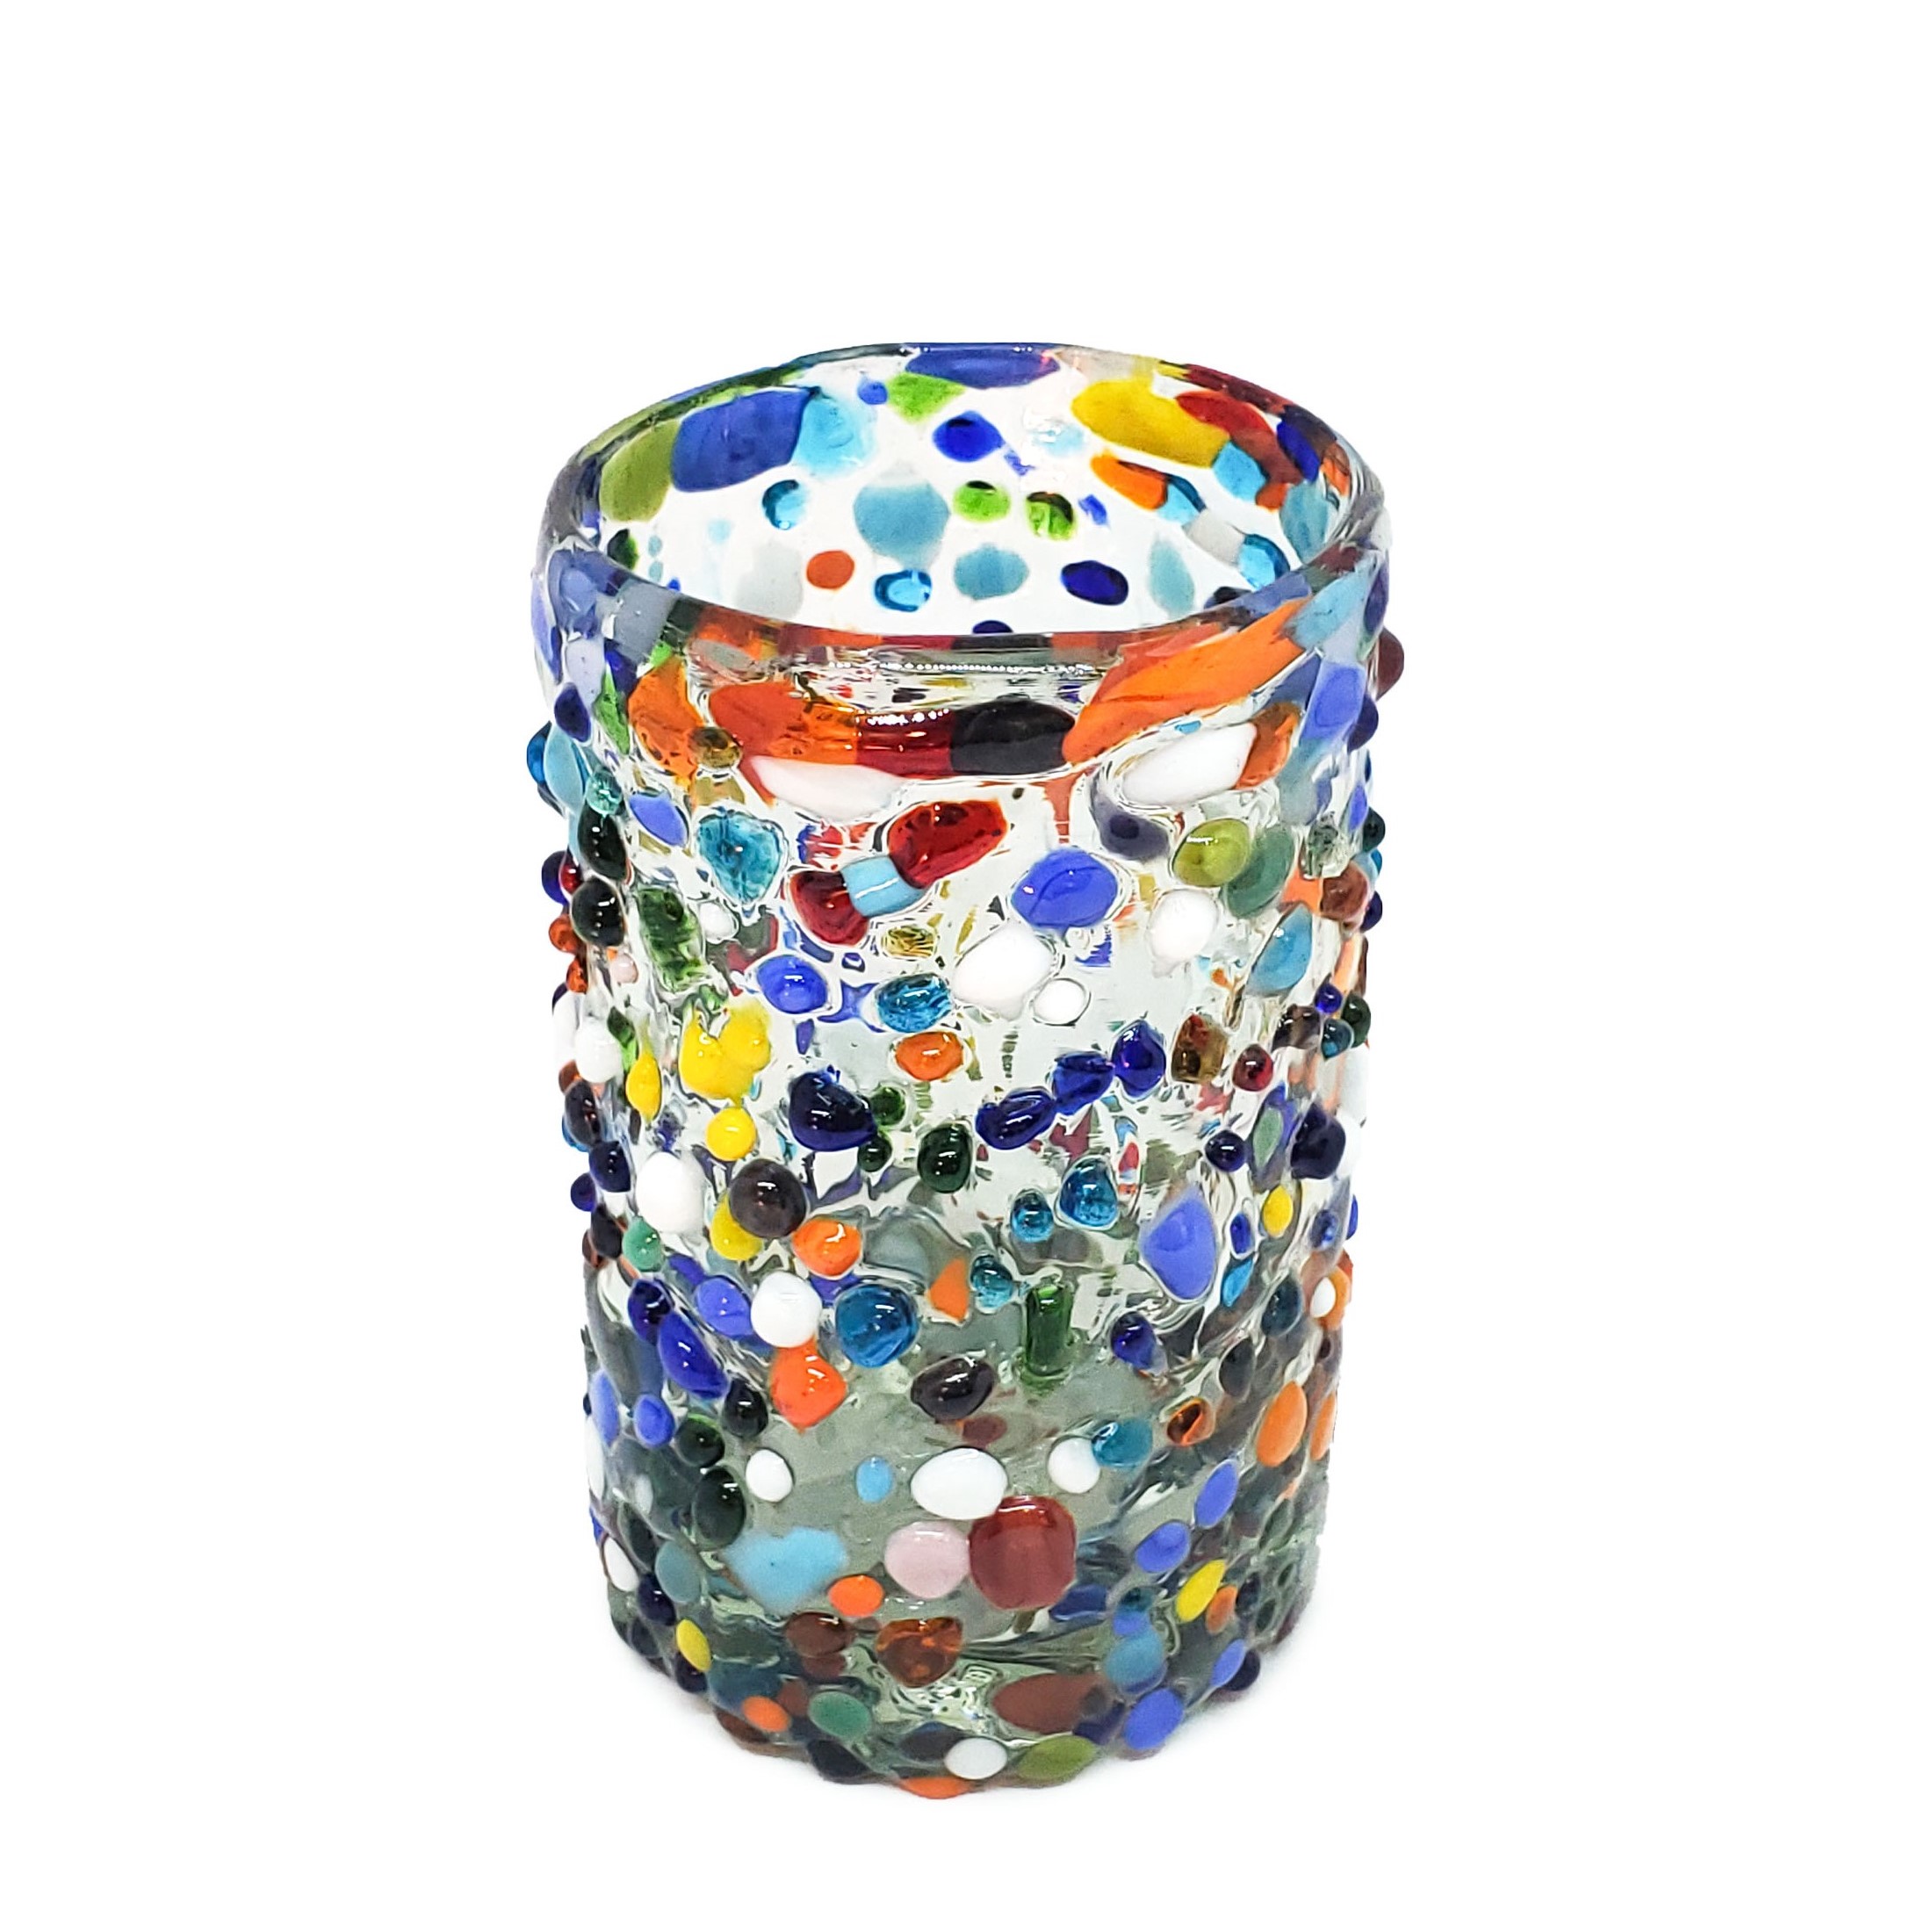 VIDRIO SOPLADO / vasos Jugo 9oz Confeti granizado, 9 oz, Vidrio Reciclado, Libre de Plomo y Toxinas